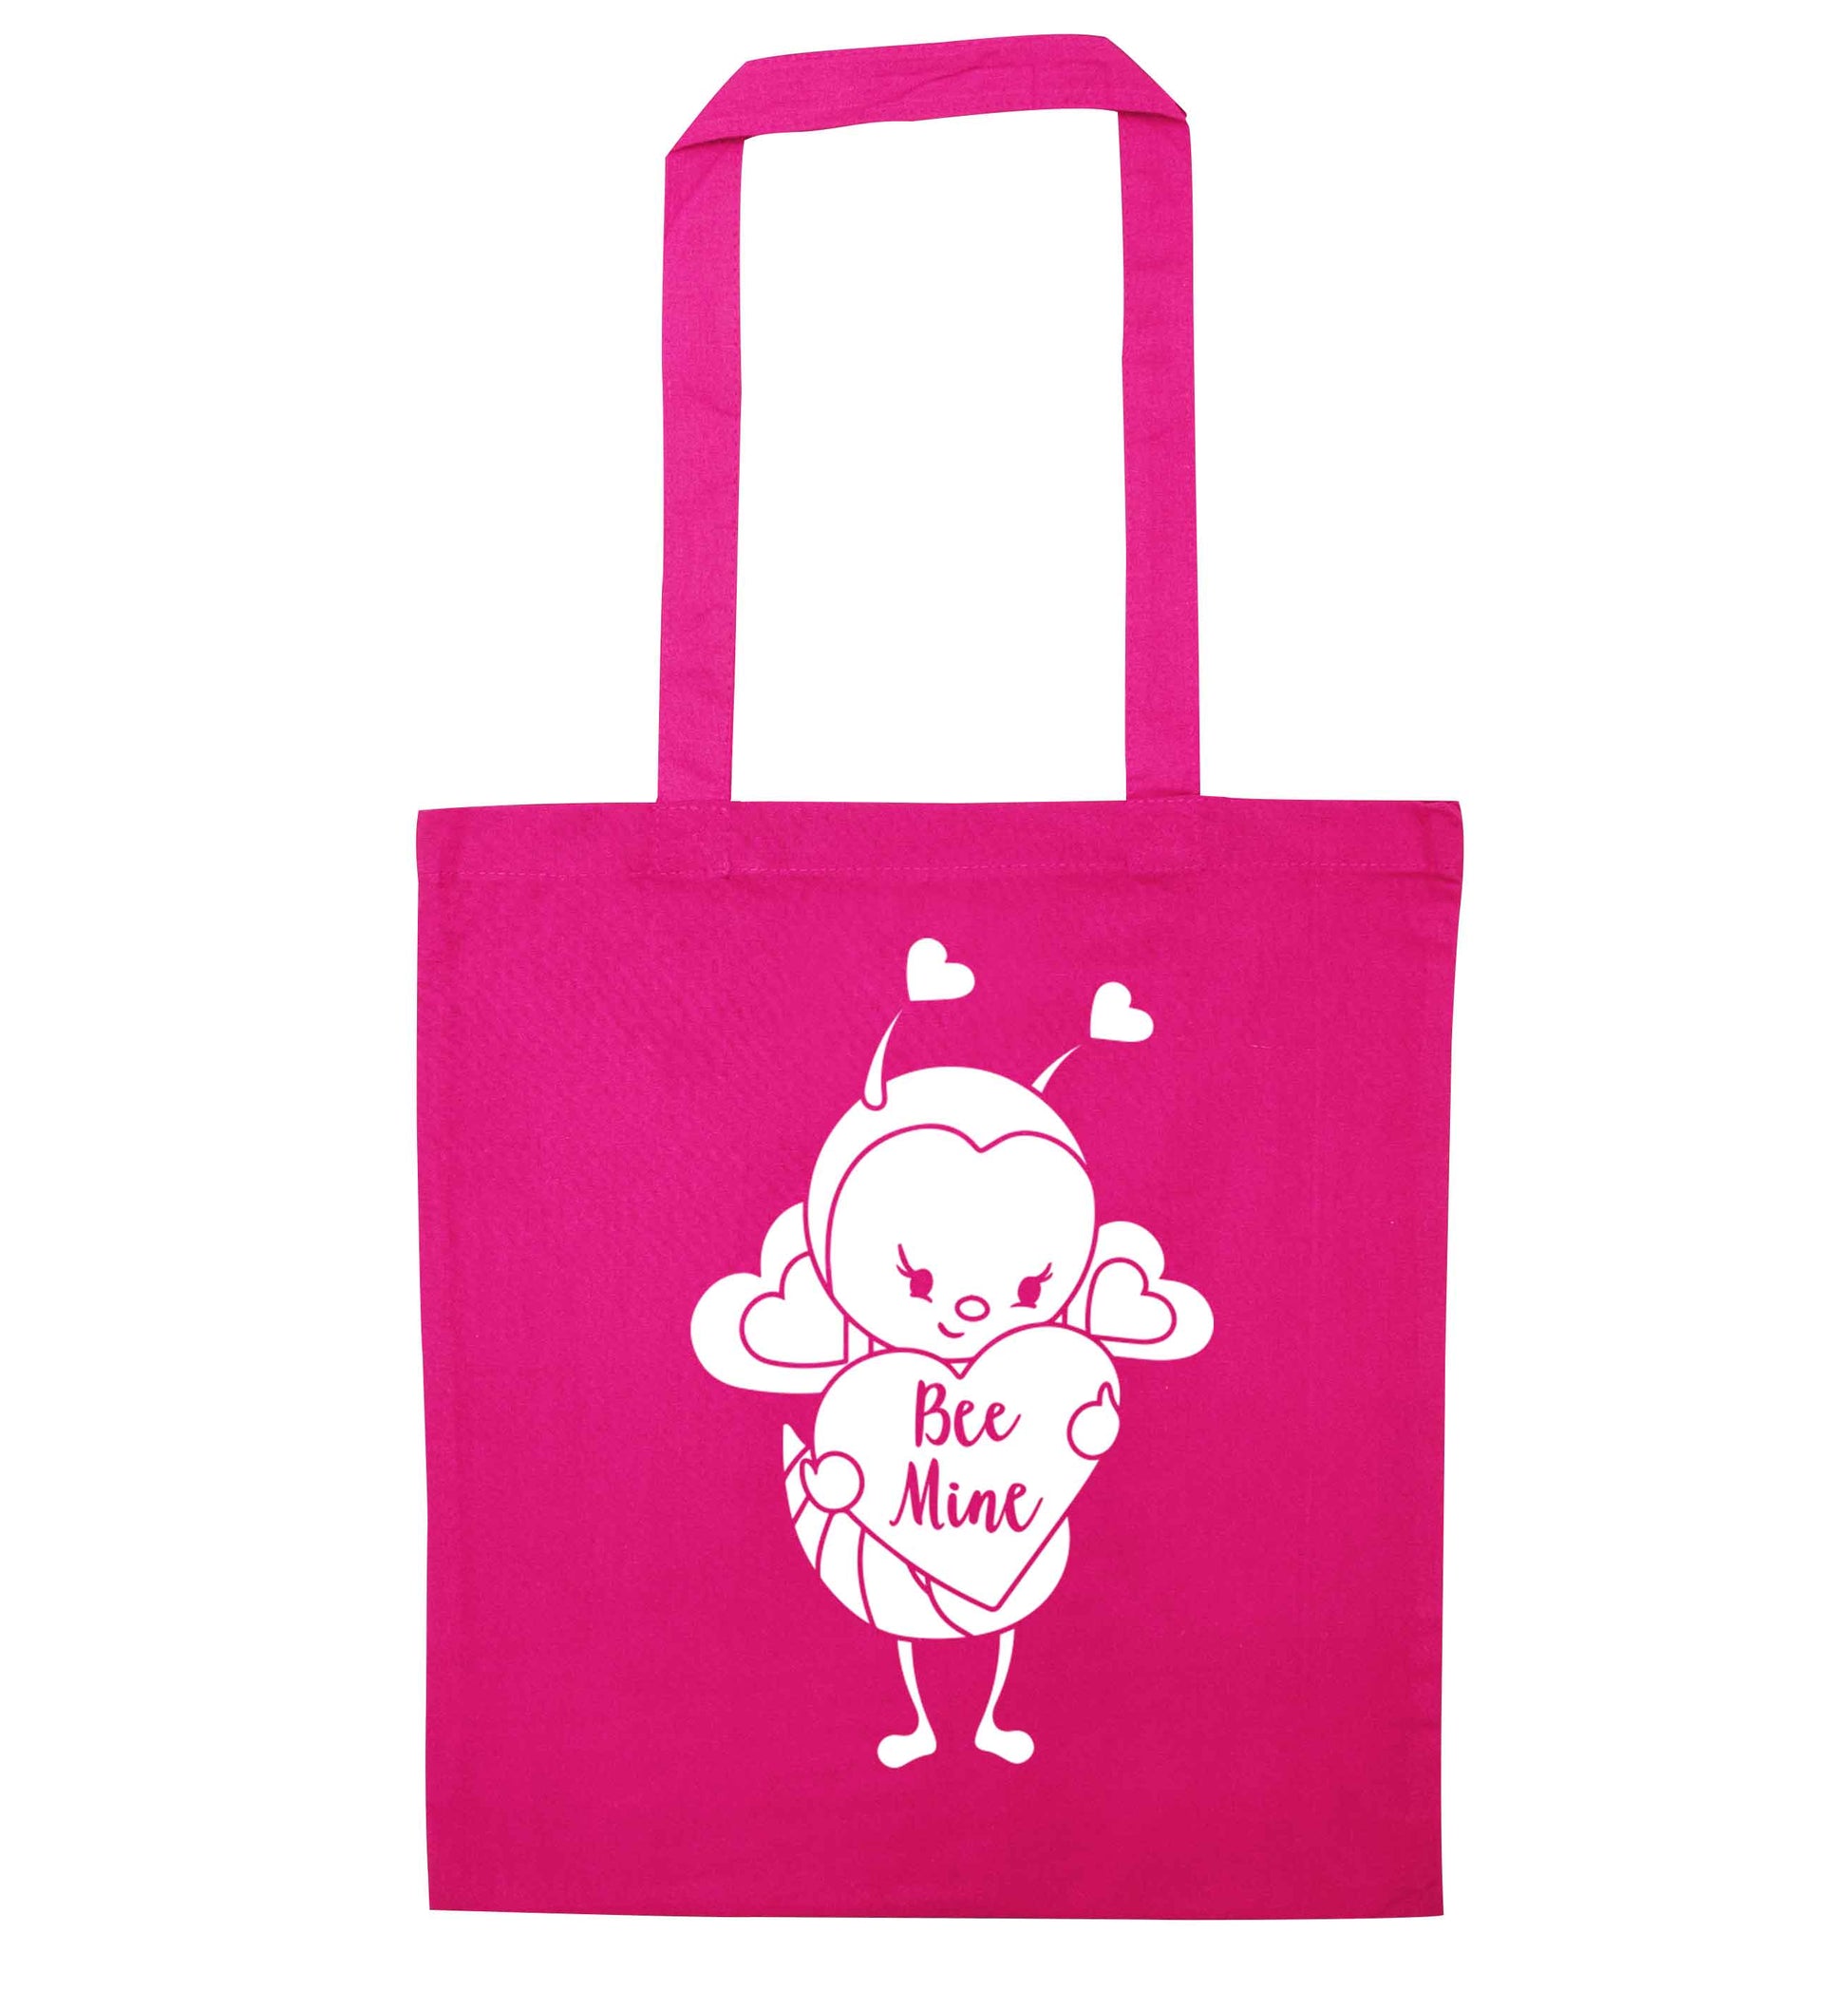 Bee mine pink tote bag